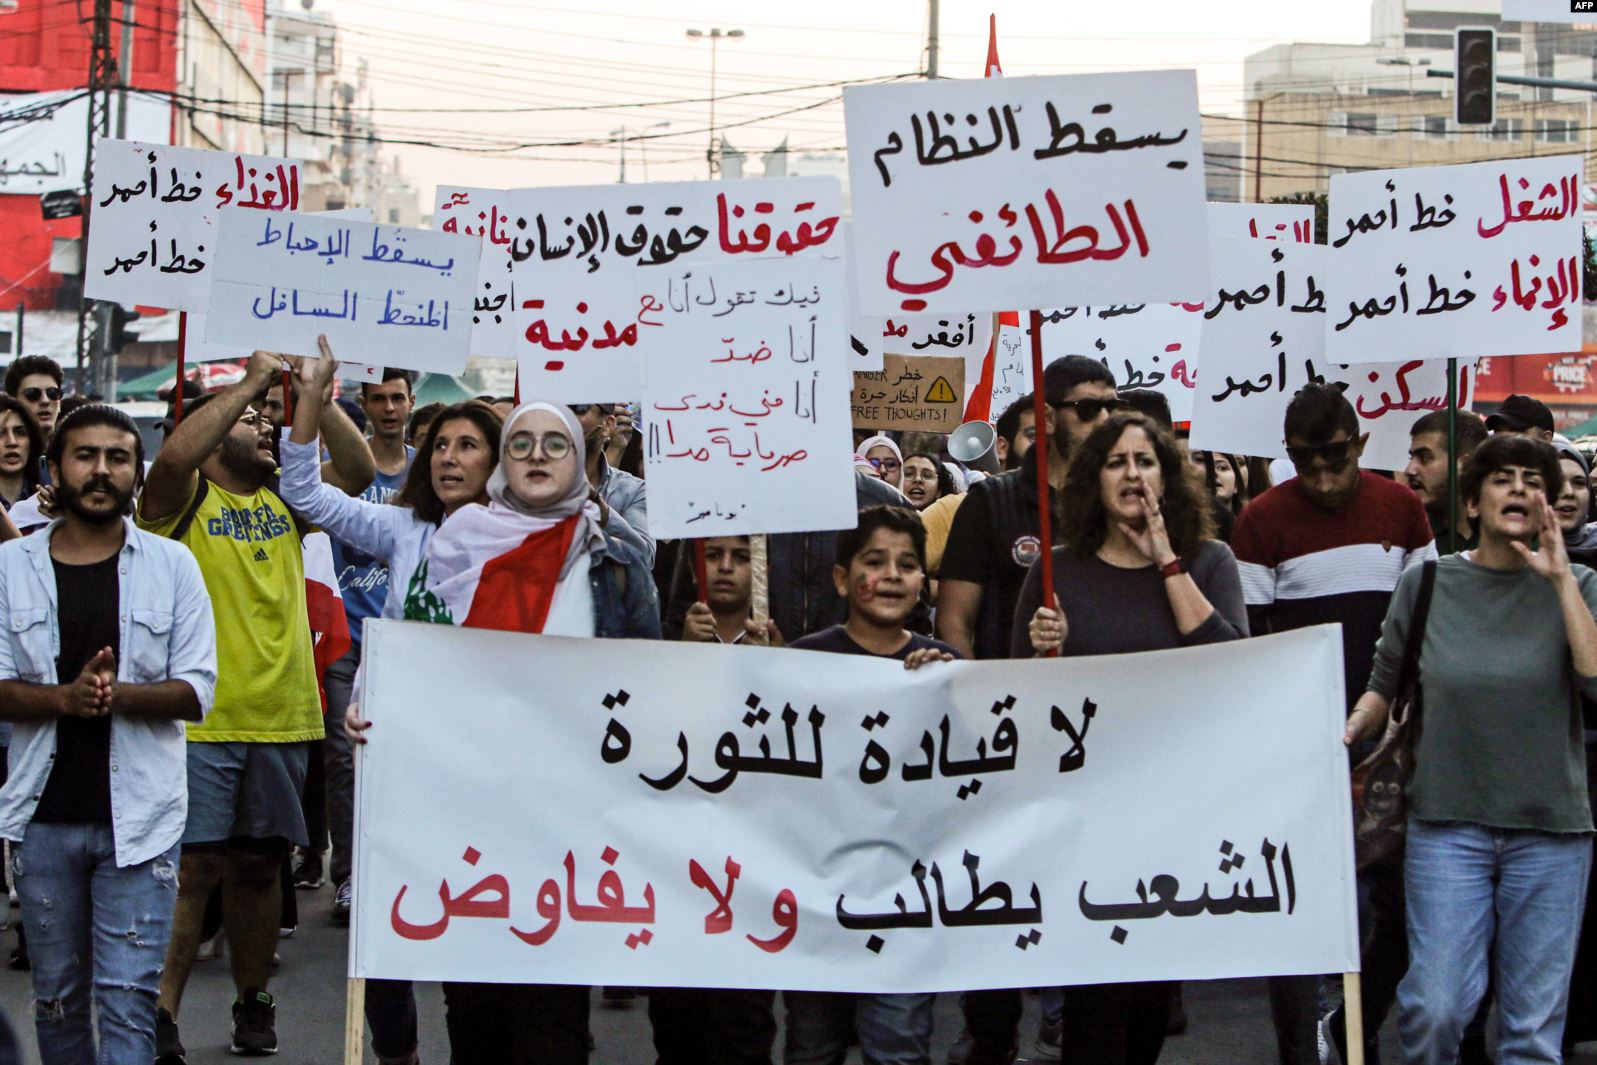 حراك شعبي غير مسبوق في لبنان يستمر لإسقاط الطبقة السياسية الحاكمة